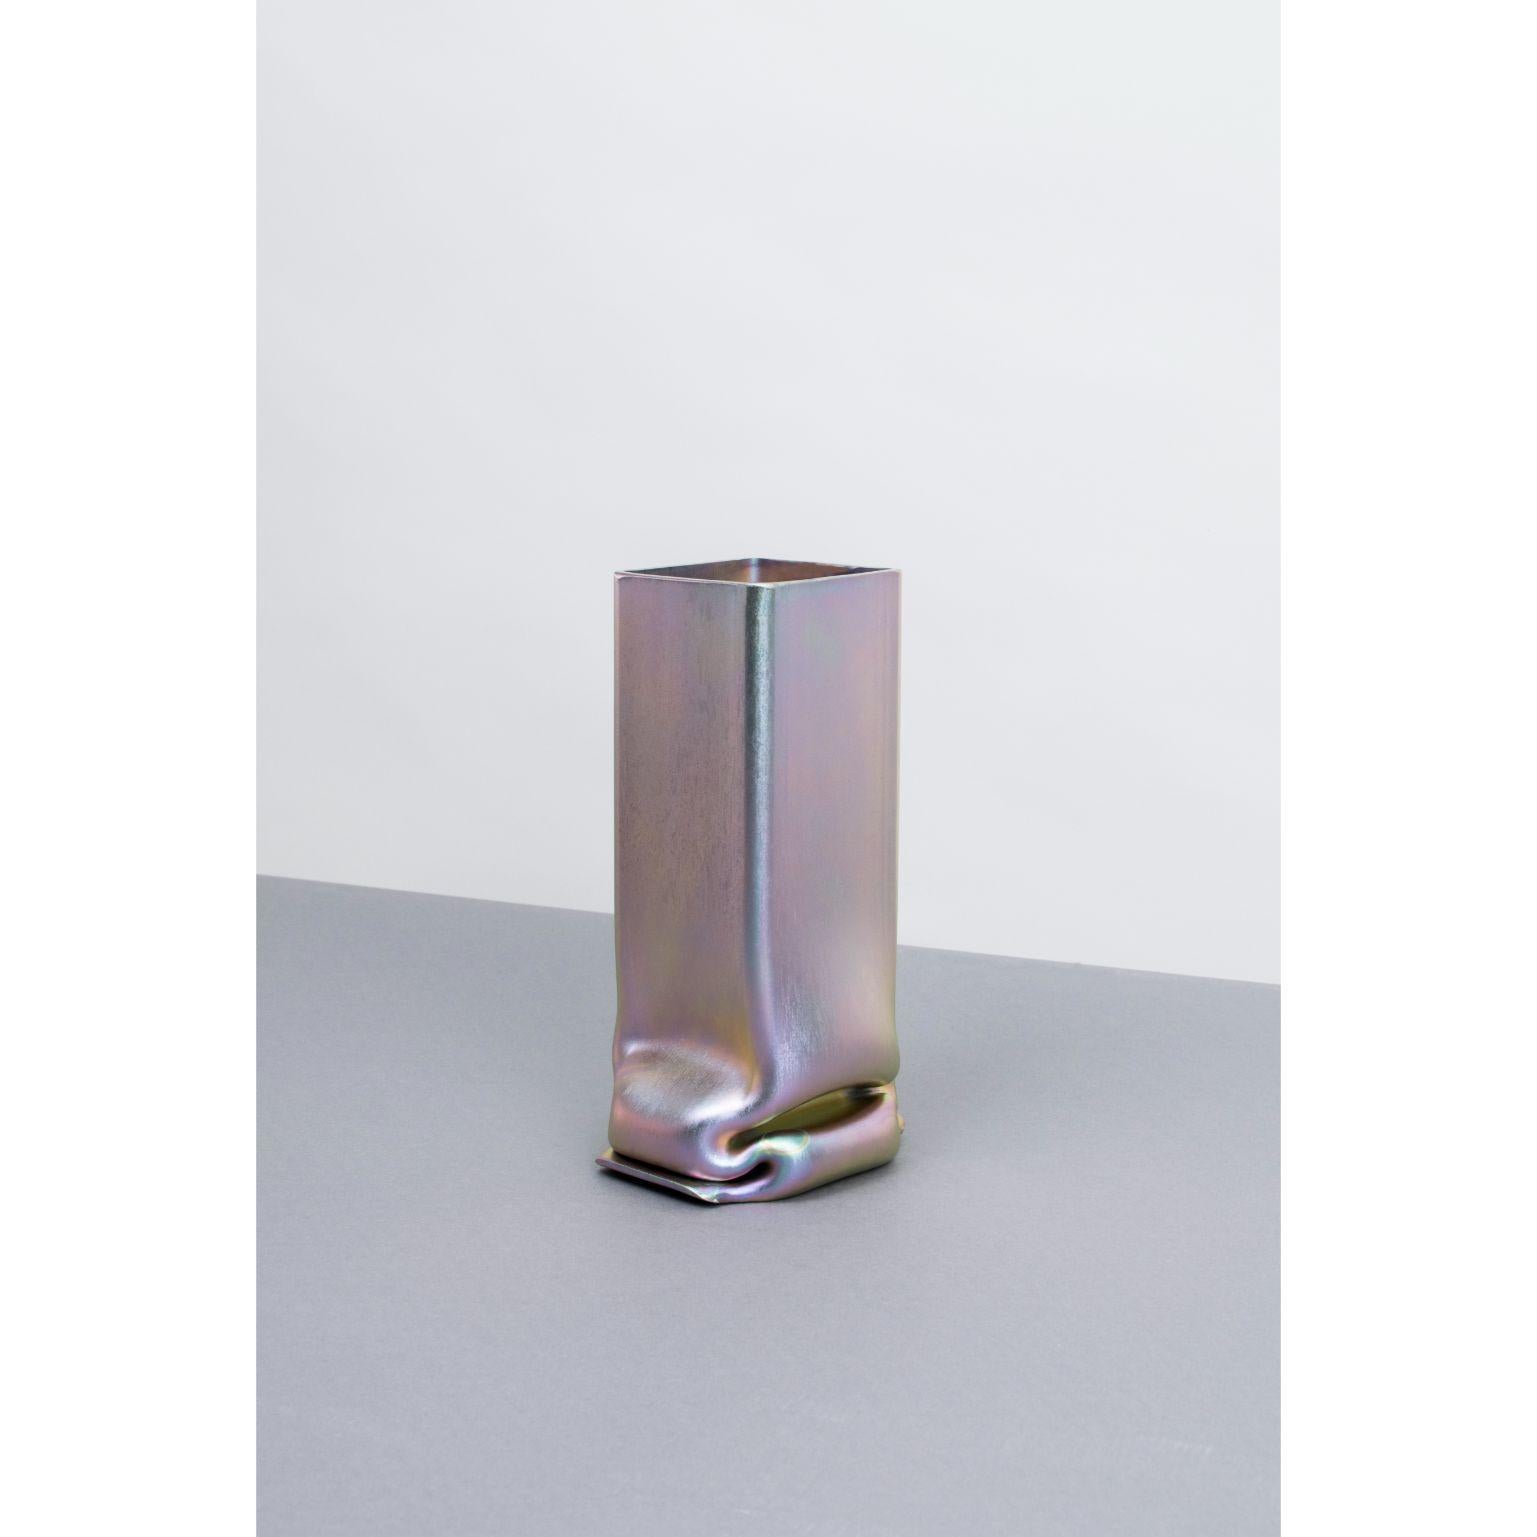 Un ensemble de vases à pression plaqués zinc et chrome / acier inoxydable XL par Tim Teven
Série pression (2018 - en cours)
Dimensions : 20 x 10 x 48 cm
Matériaux : Zinc et chrome/acier inoxydable.

Également disponible : Différentes tailles,